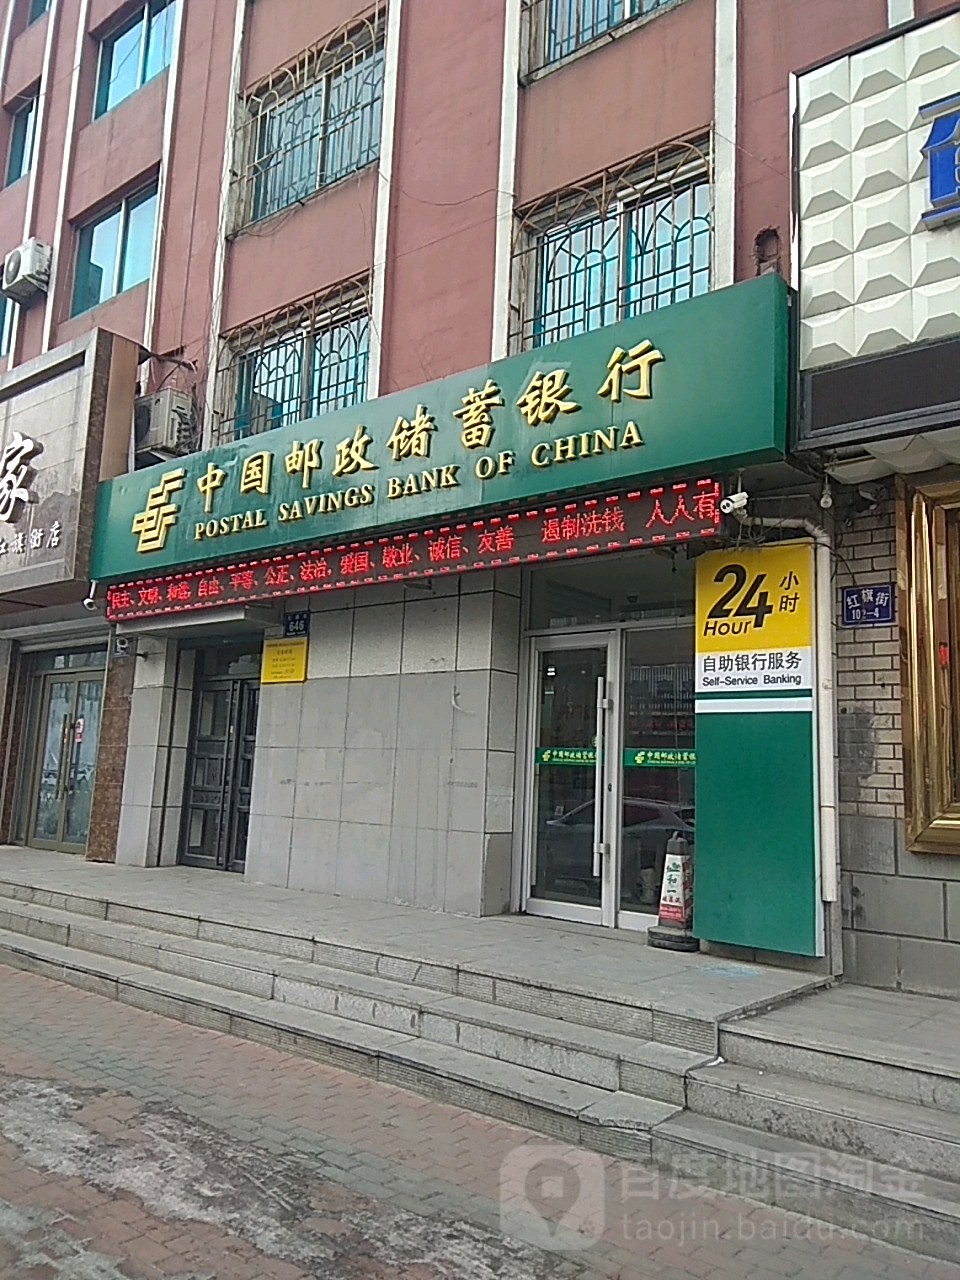 中國郵政儲蓄銀行24小時自助銀行服務(通江路營業所)